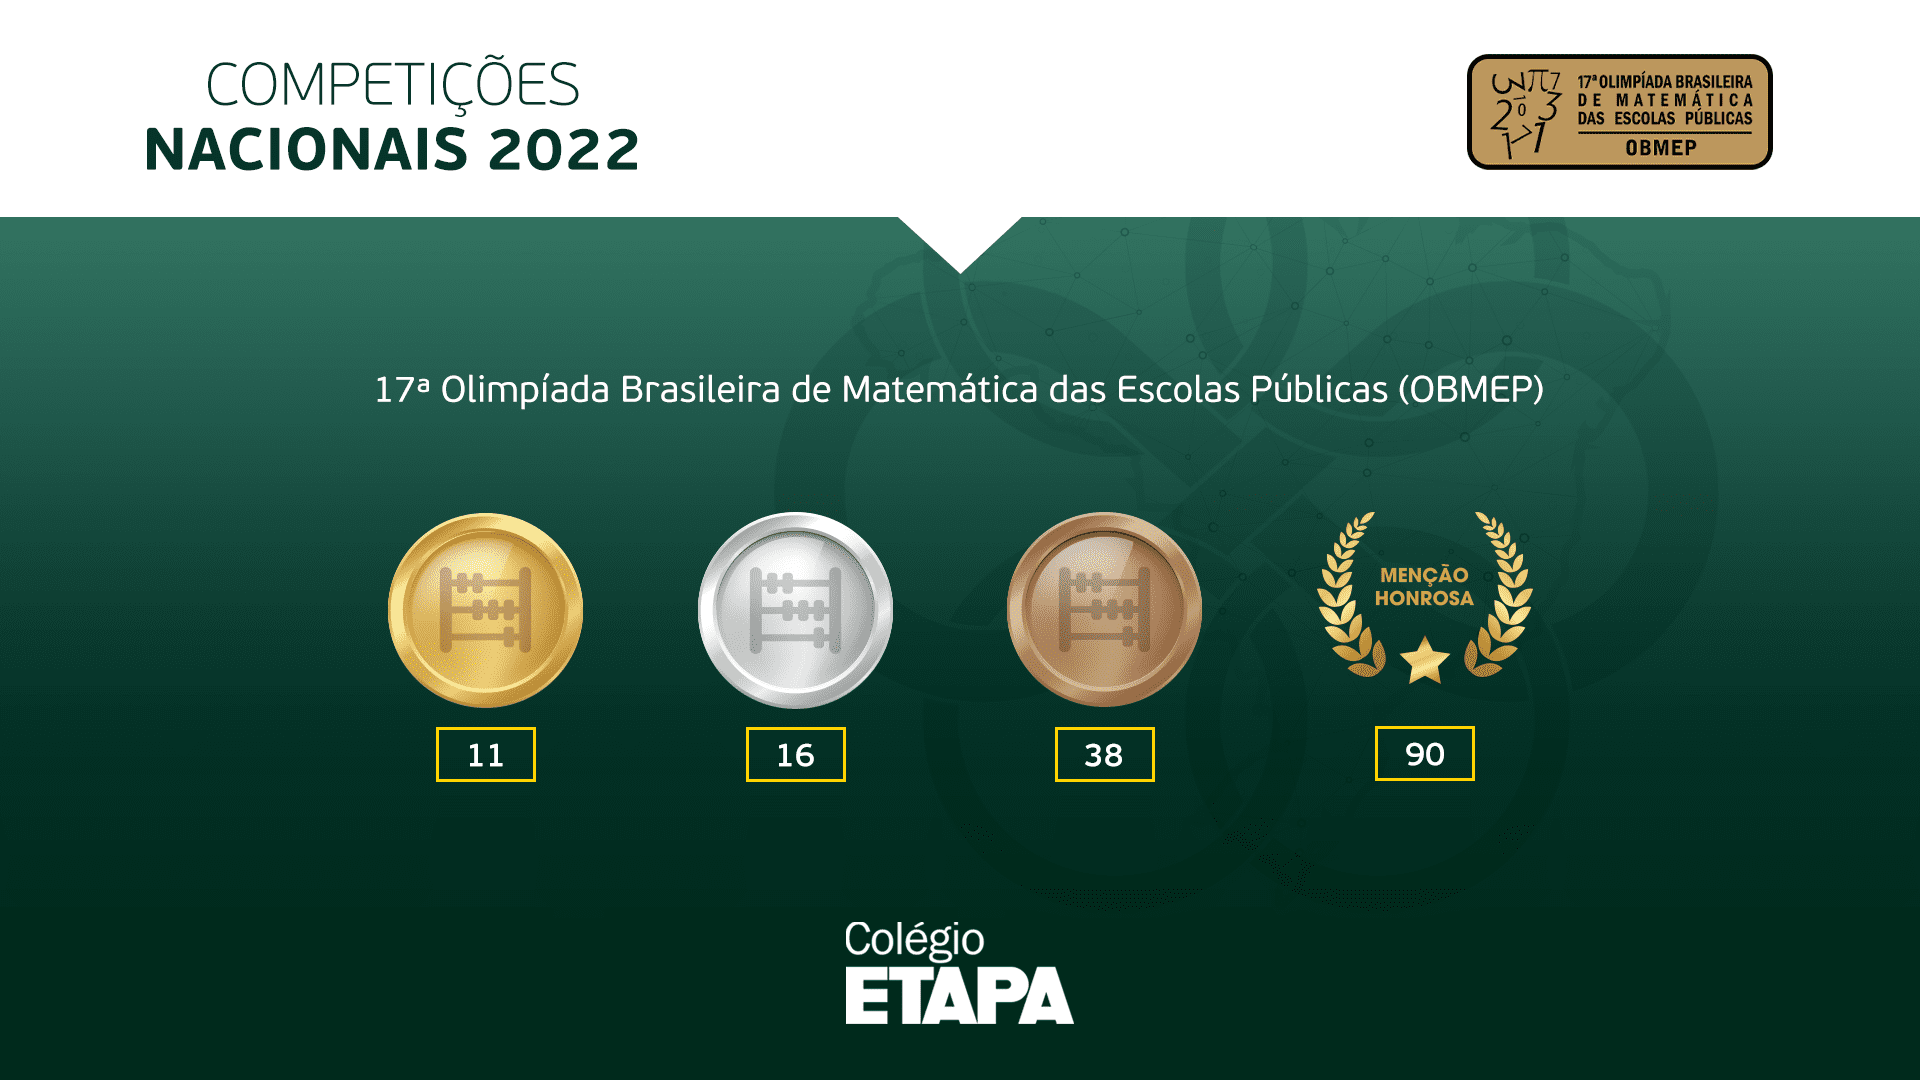 Além das 155 condecorações dos nossos alunos, o Colégio Etapa recebeu três premiações destinadas às escolas privadas que se destacaram na OBMEP 2022.